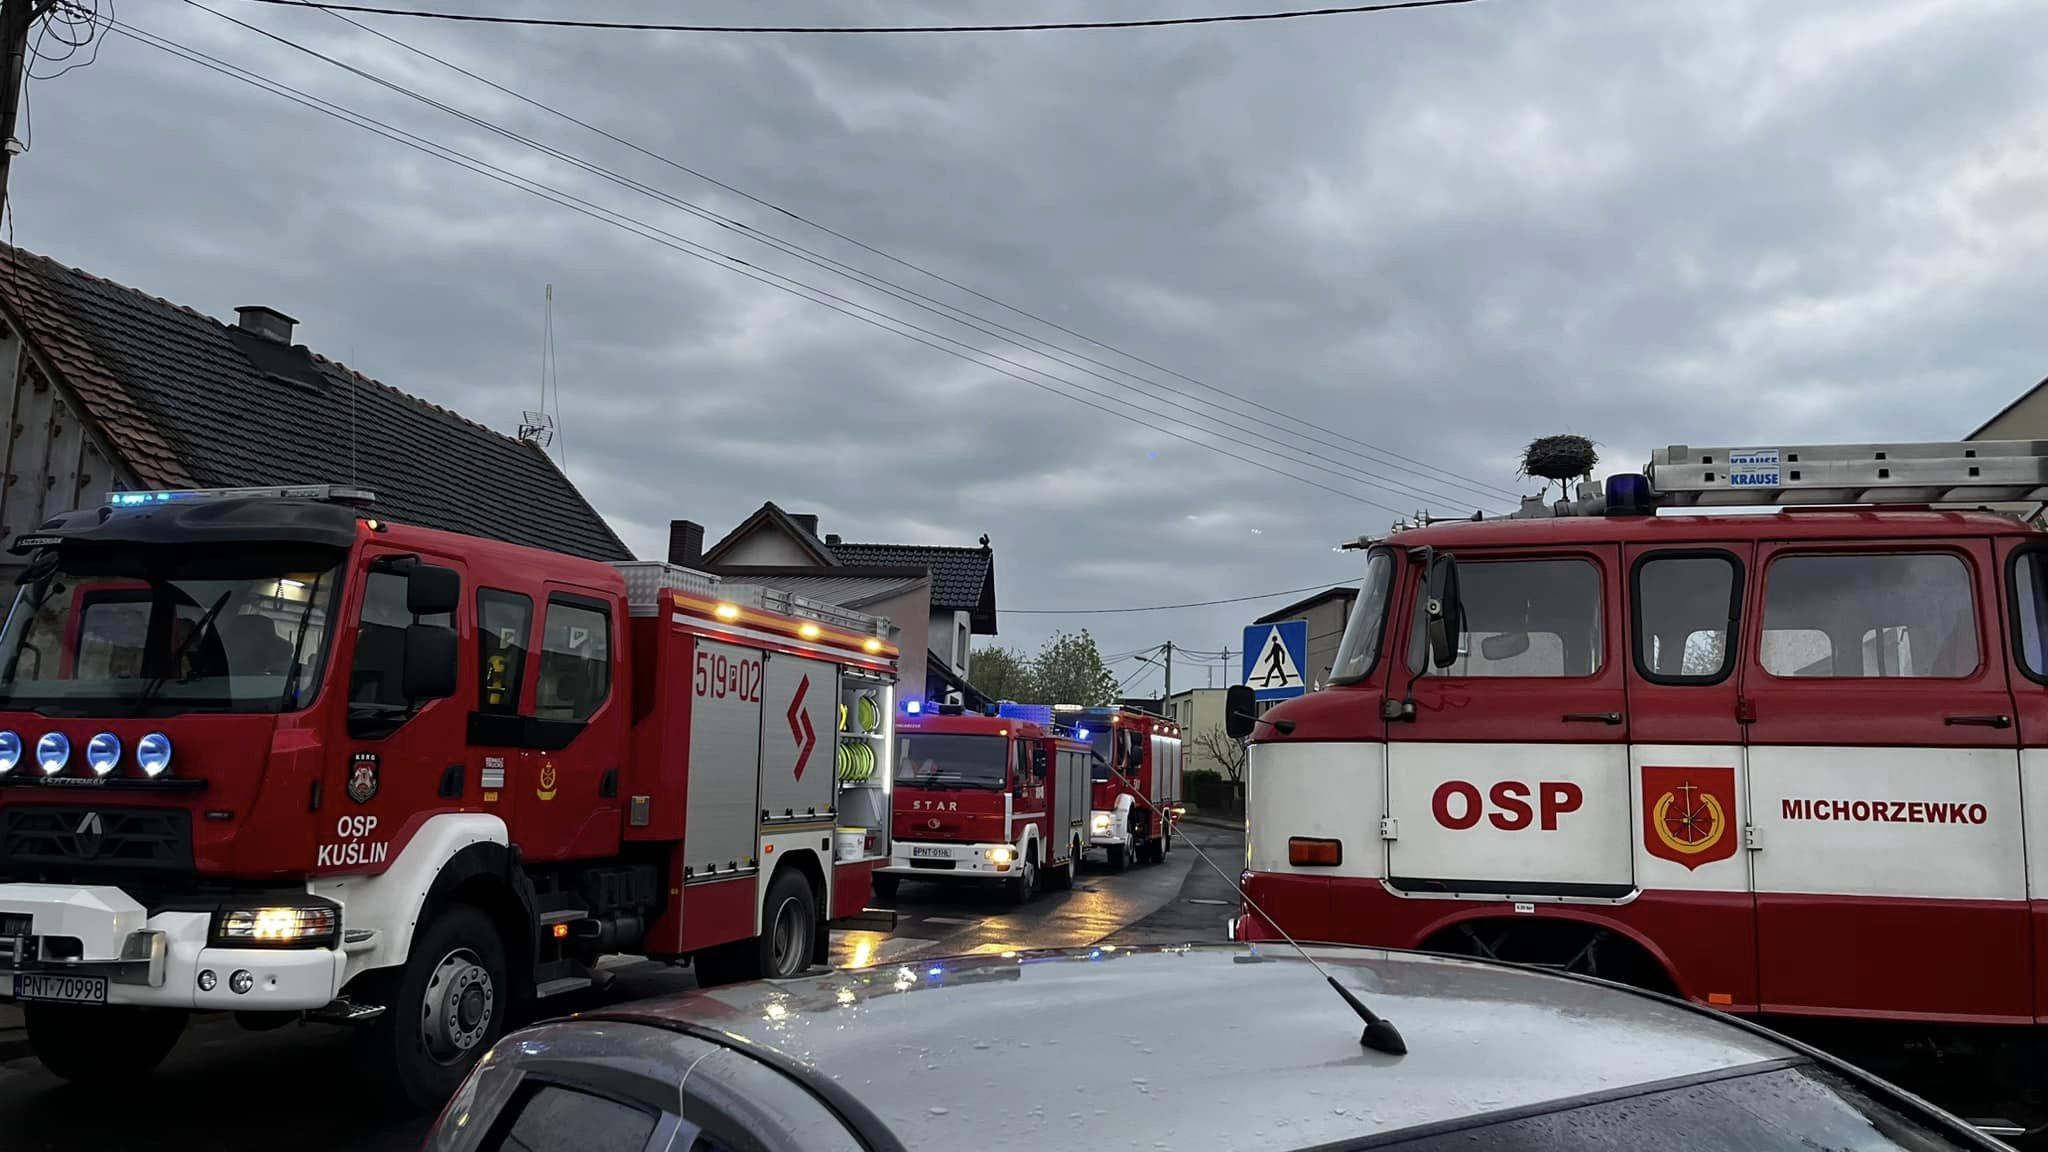 pożar michorzewko w michorzewku rodzina starciła dom w pożarze - OSP Michorzewko